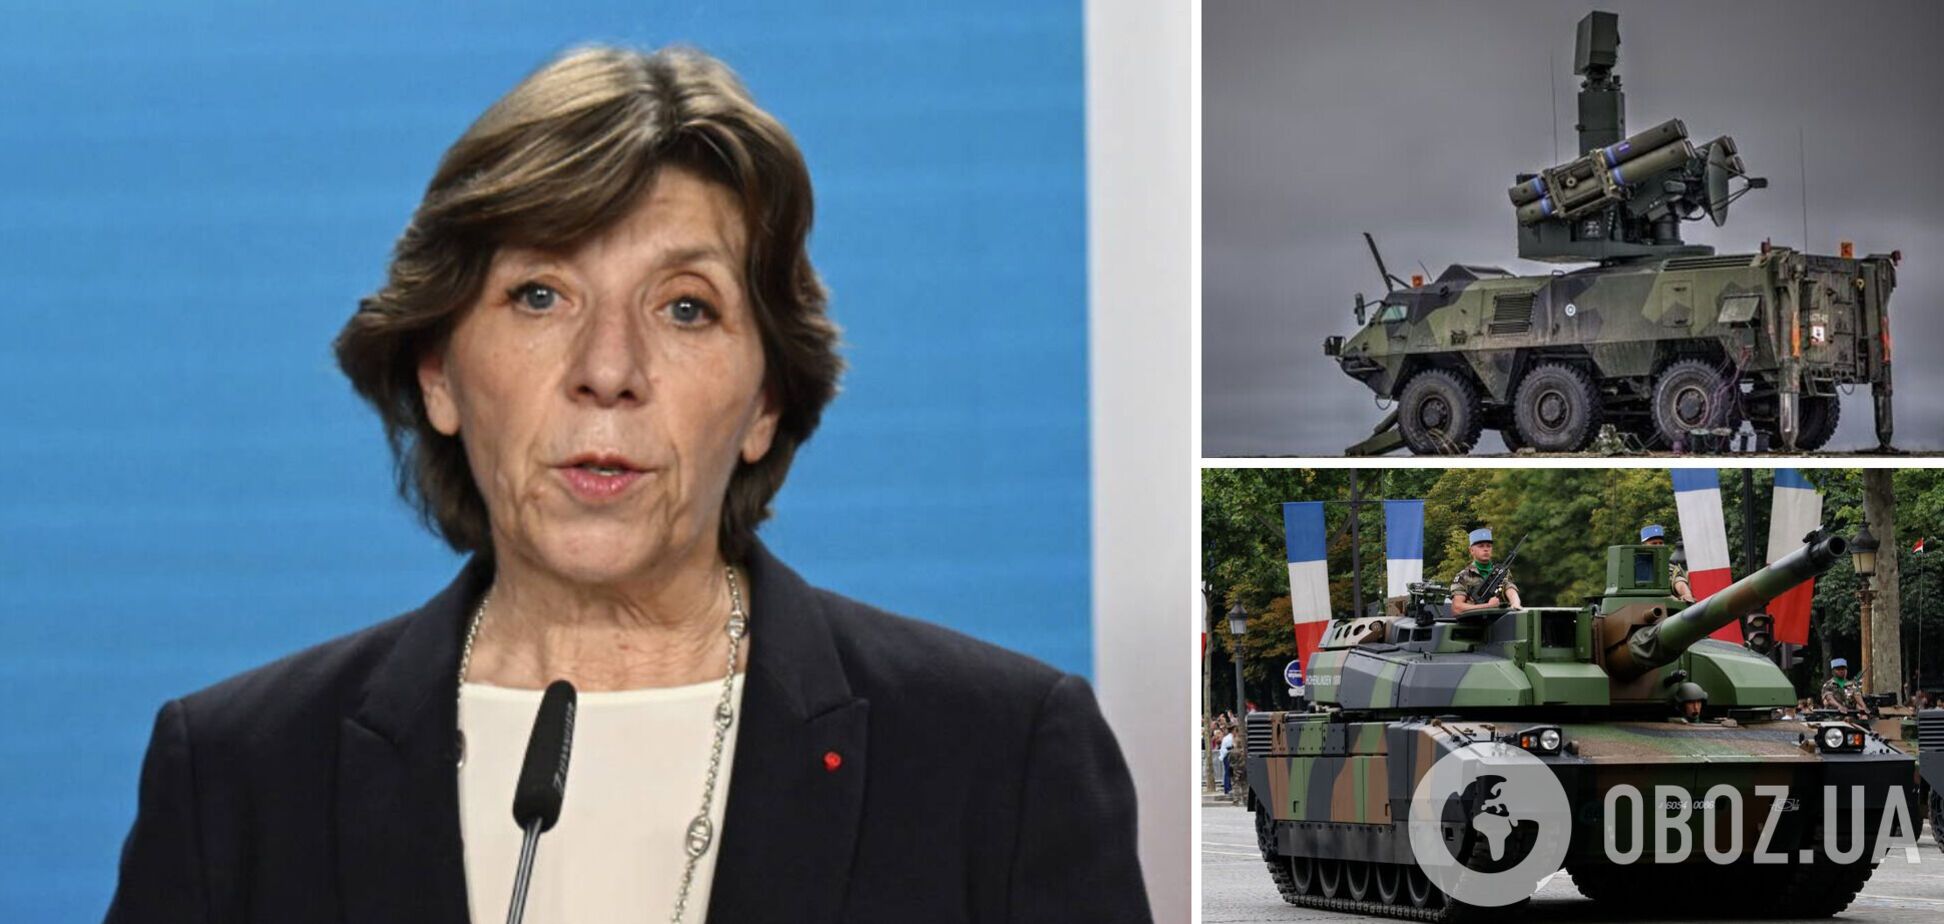 Франция рассматривает передачу Украине систем ПВО, по танкам Leclerc решения нет – МИД